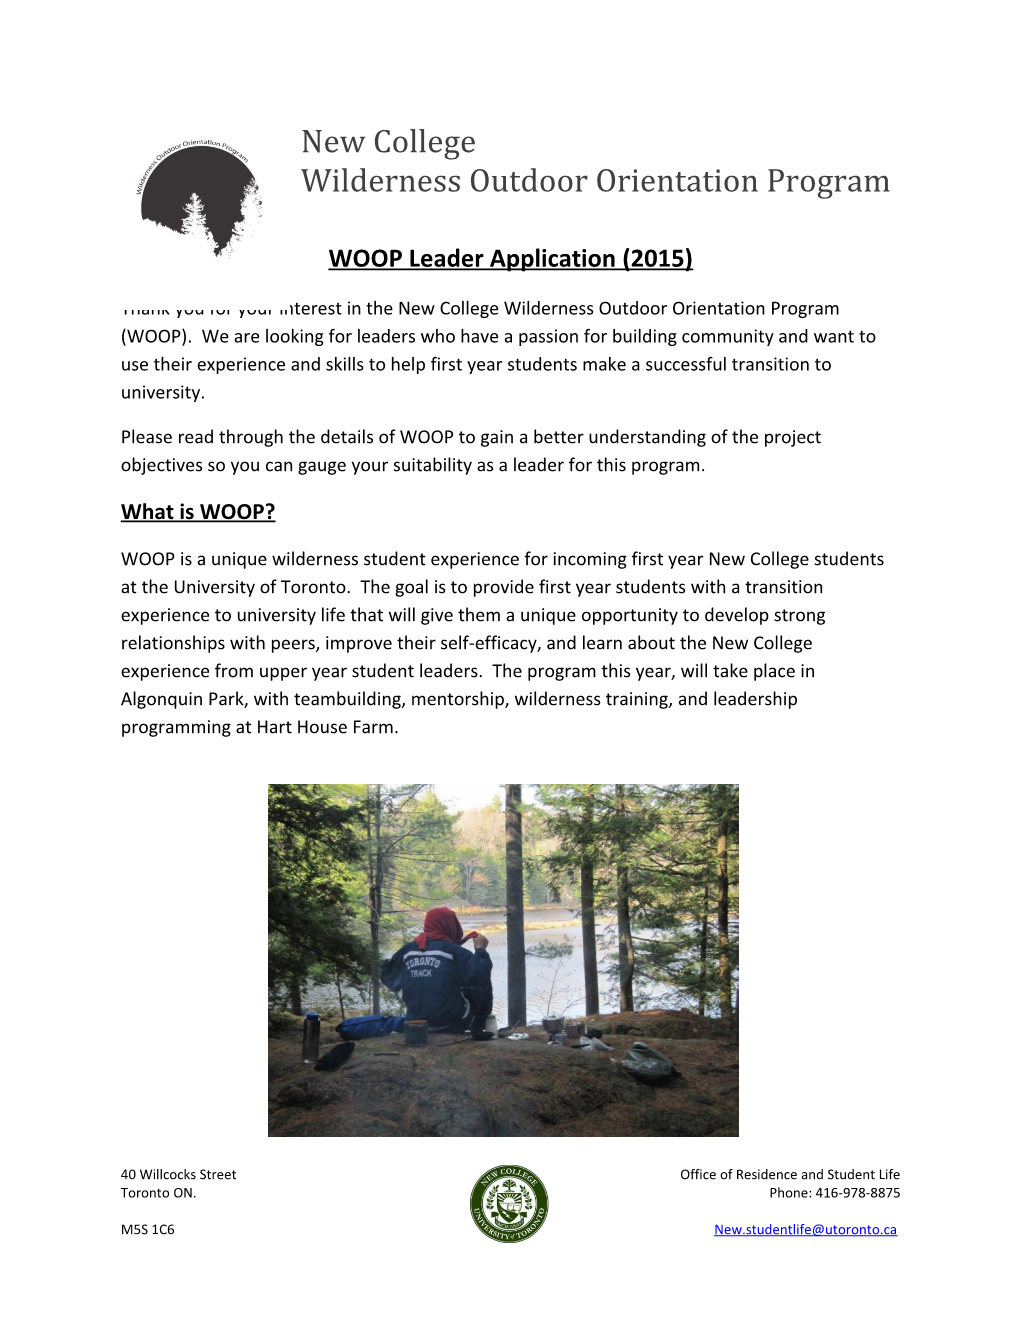 Wilderness Outdoor Orientation Program